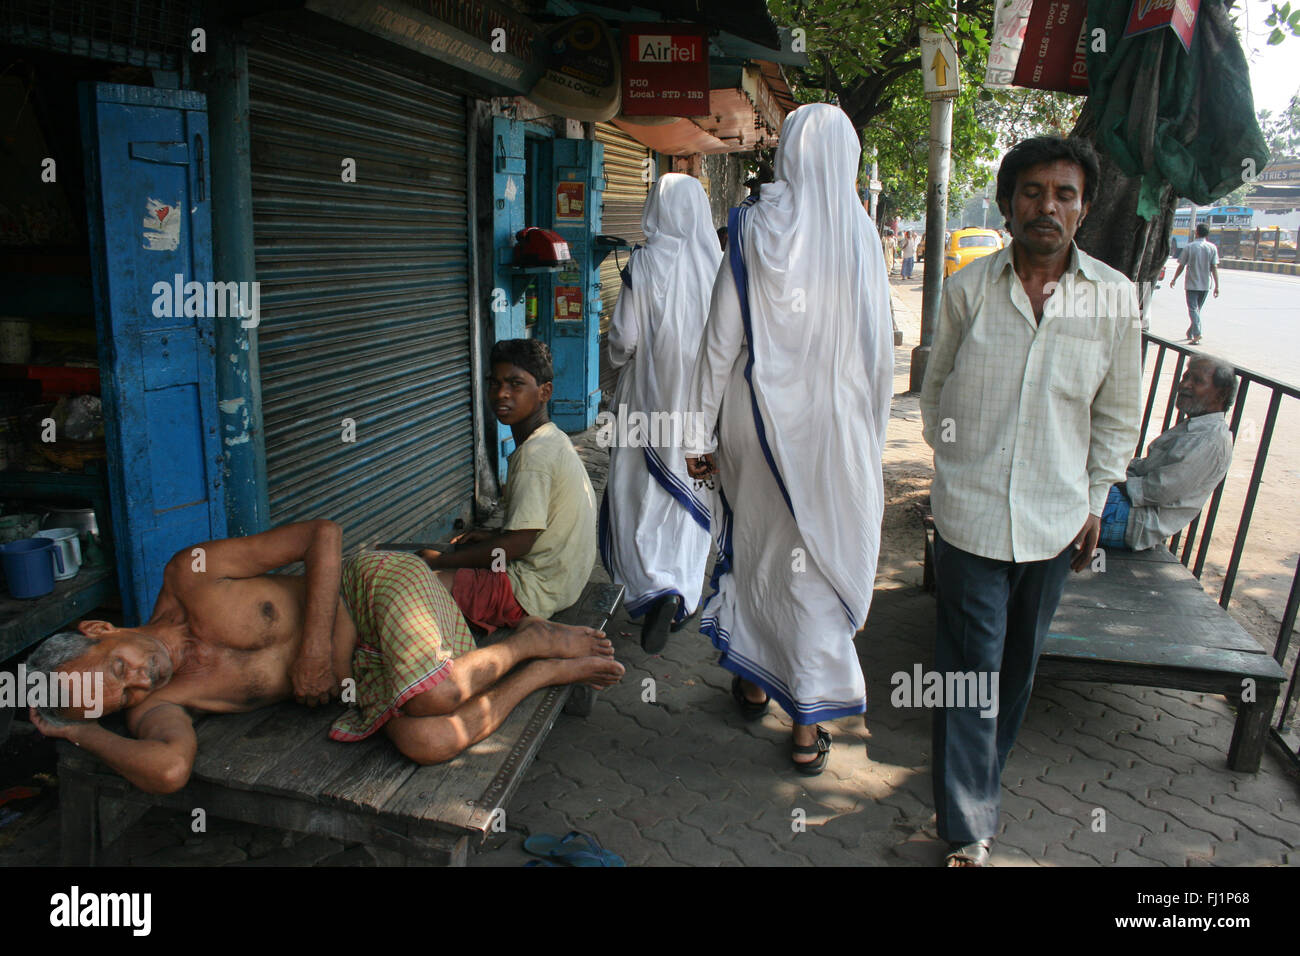 Missionare der Nächstenliebe - Mutter Teresa Nonnen Spaziergang durch die Straßen von Kalkutta, Indien, Unterstützung der Armen und Obdachlosen Stockfoto